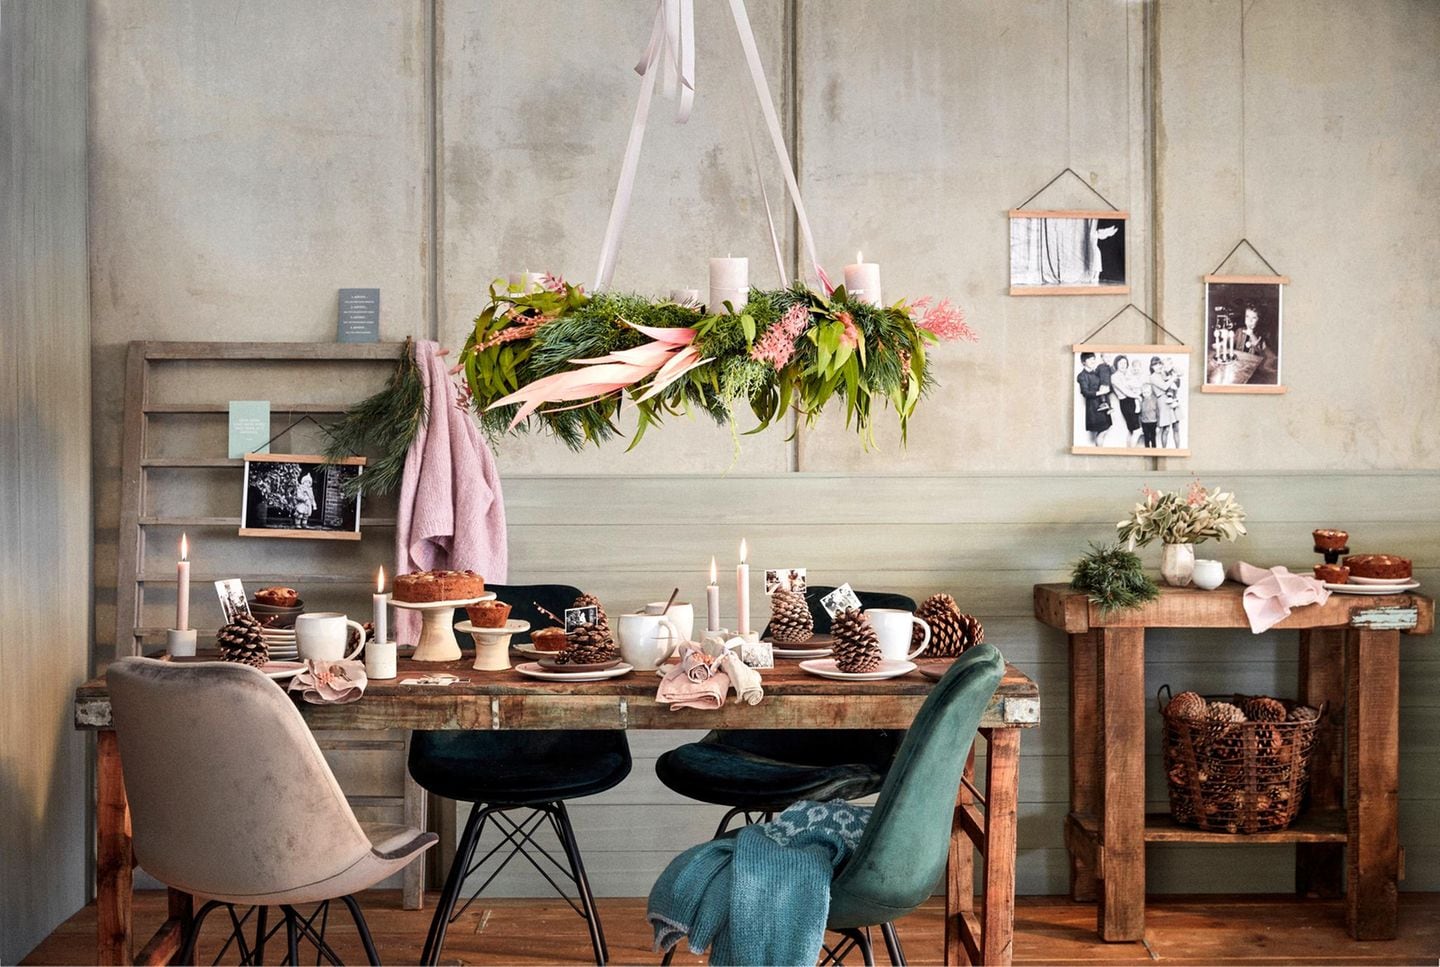 Über einem rustikalen Holztisch schwebt ein prachtvoller Adventskranz aus Tannengrün